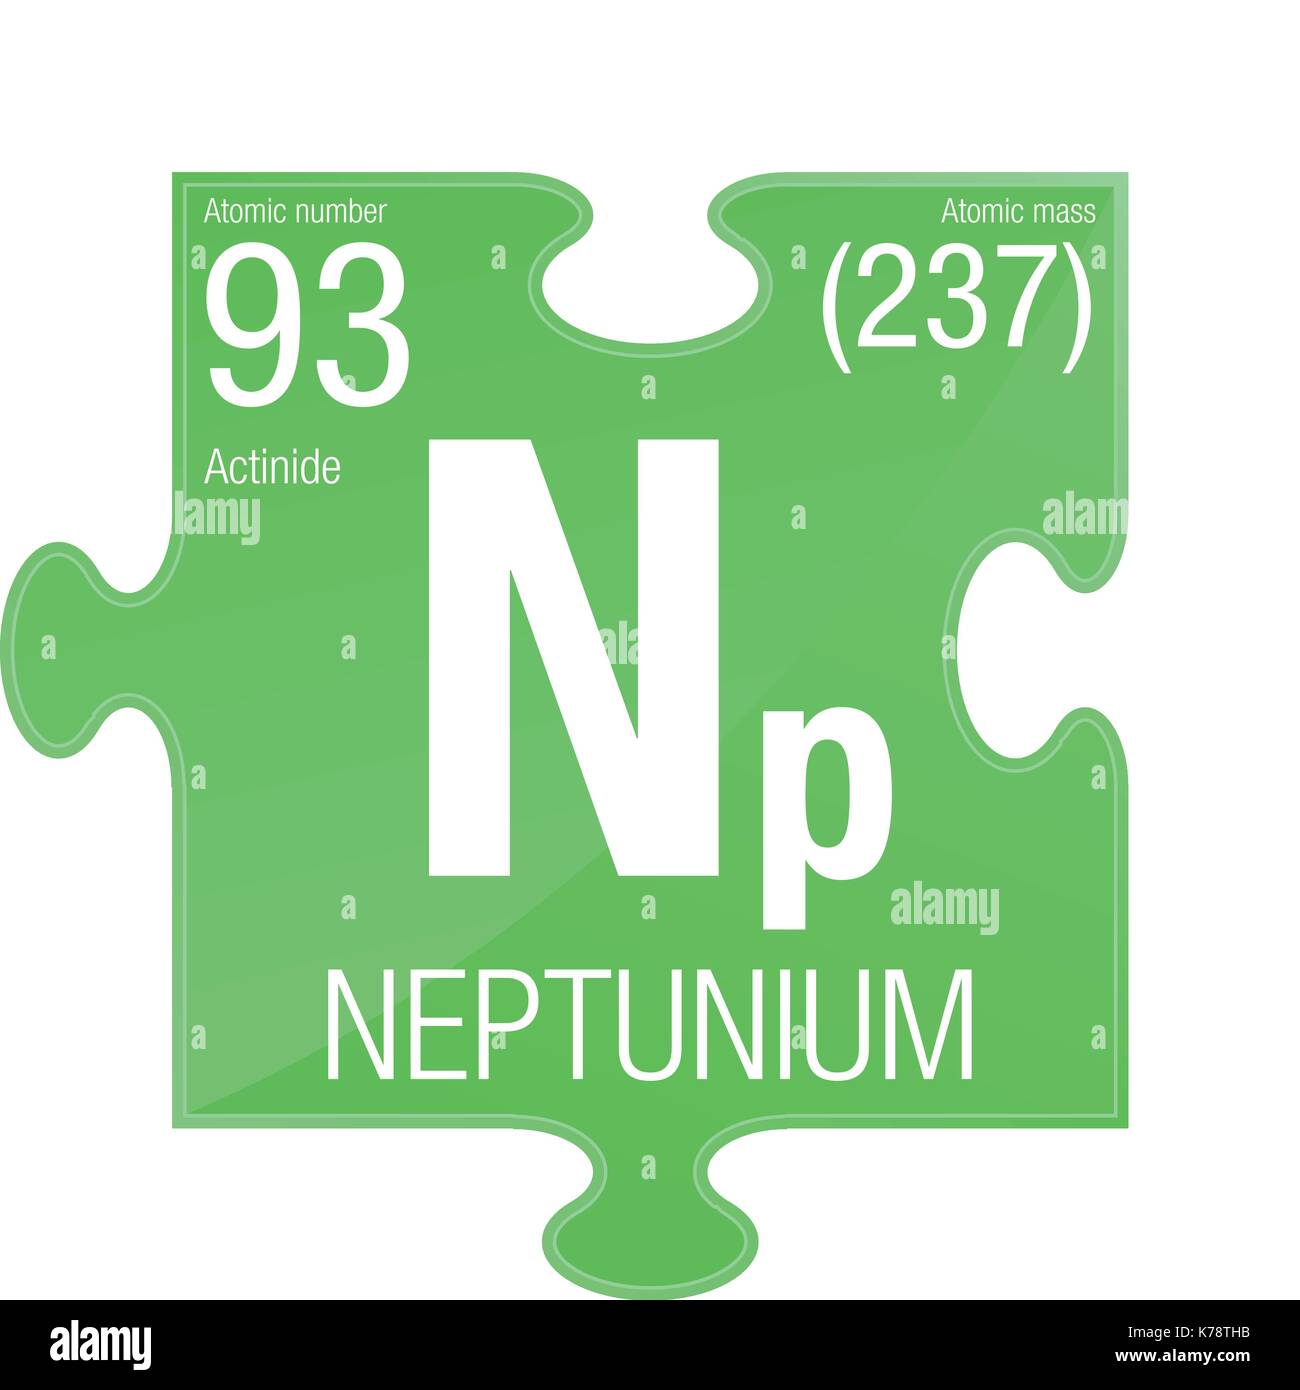 Le neptunium symbole. L'élément numéro 93 du tableau périodique des éléments  - Chimie - morceau de puzzle avec un fond vert Image Vectorielle Stock -  Alamy